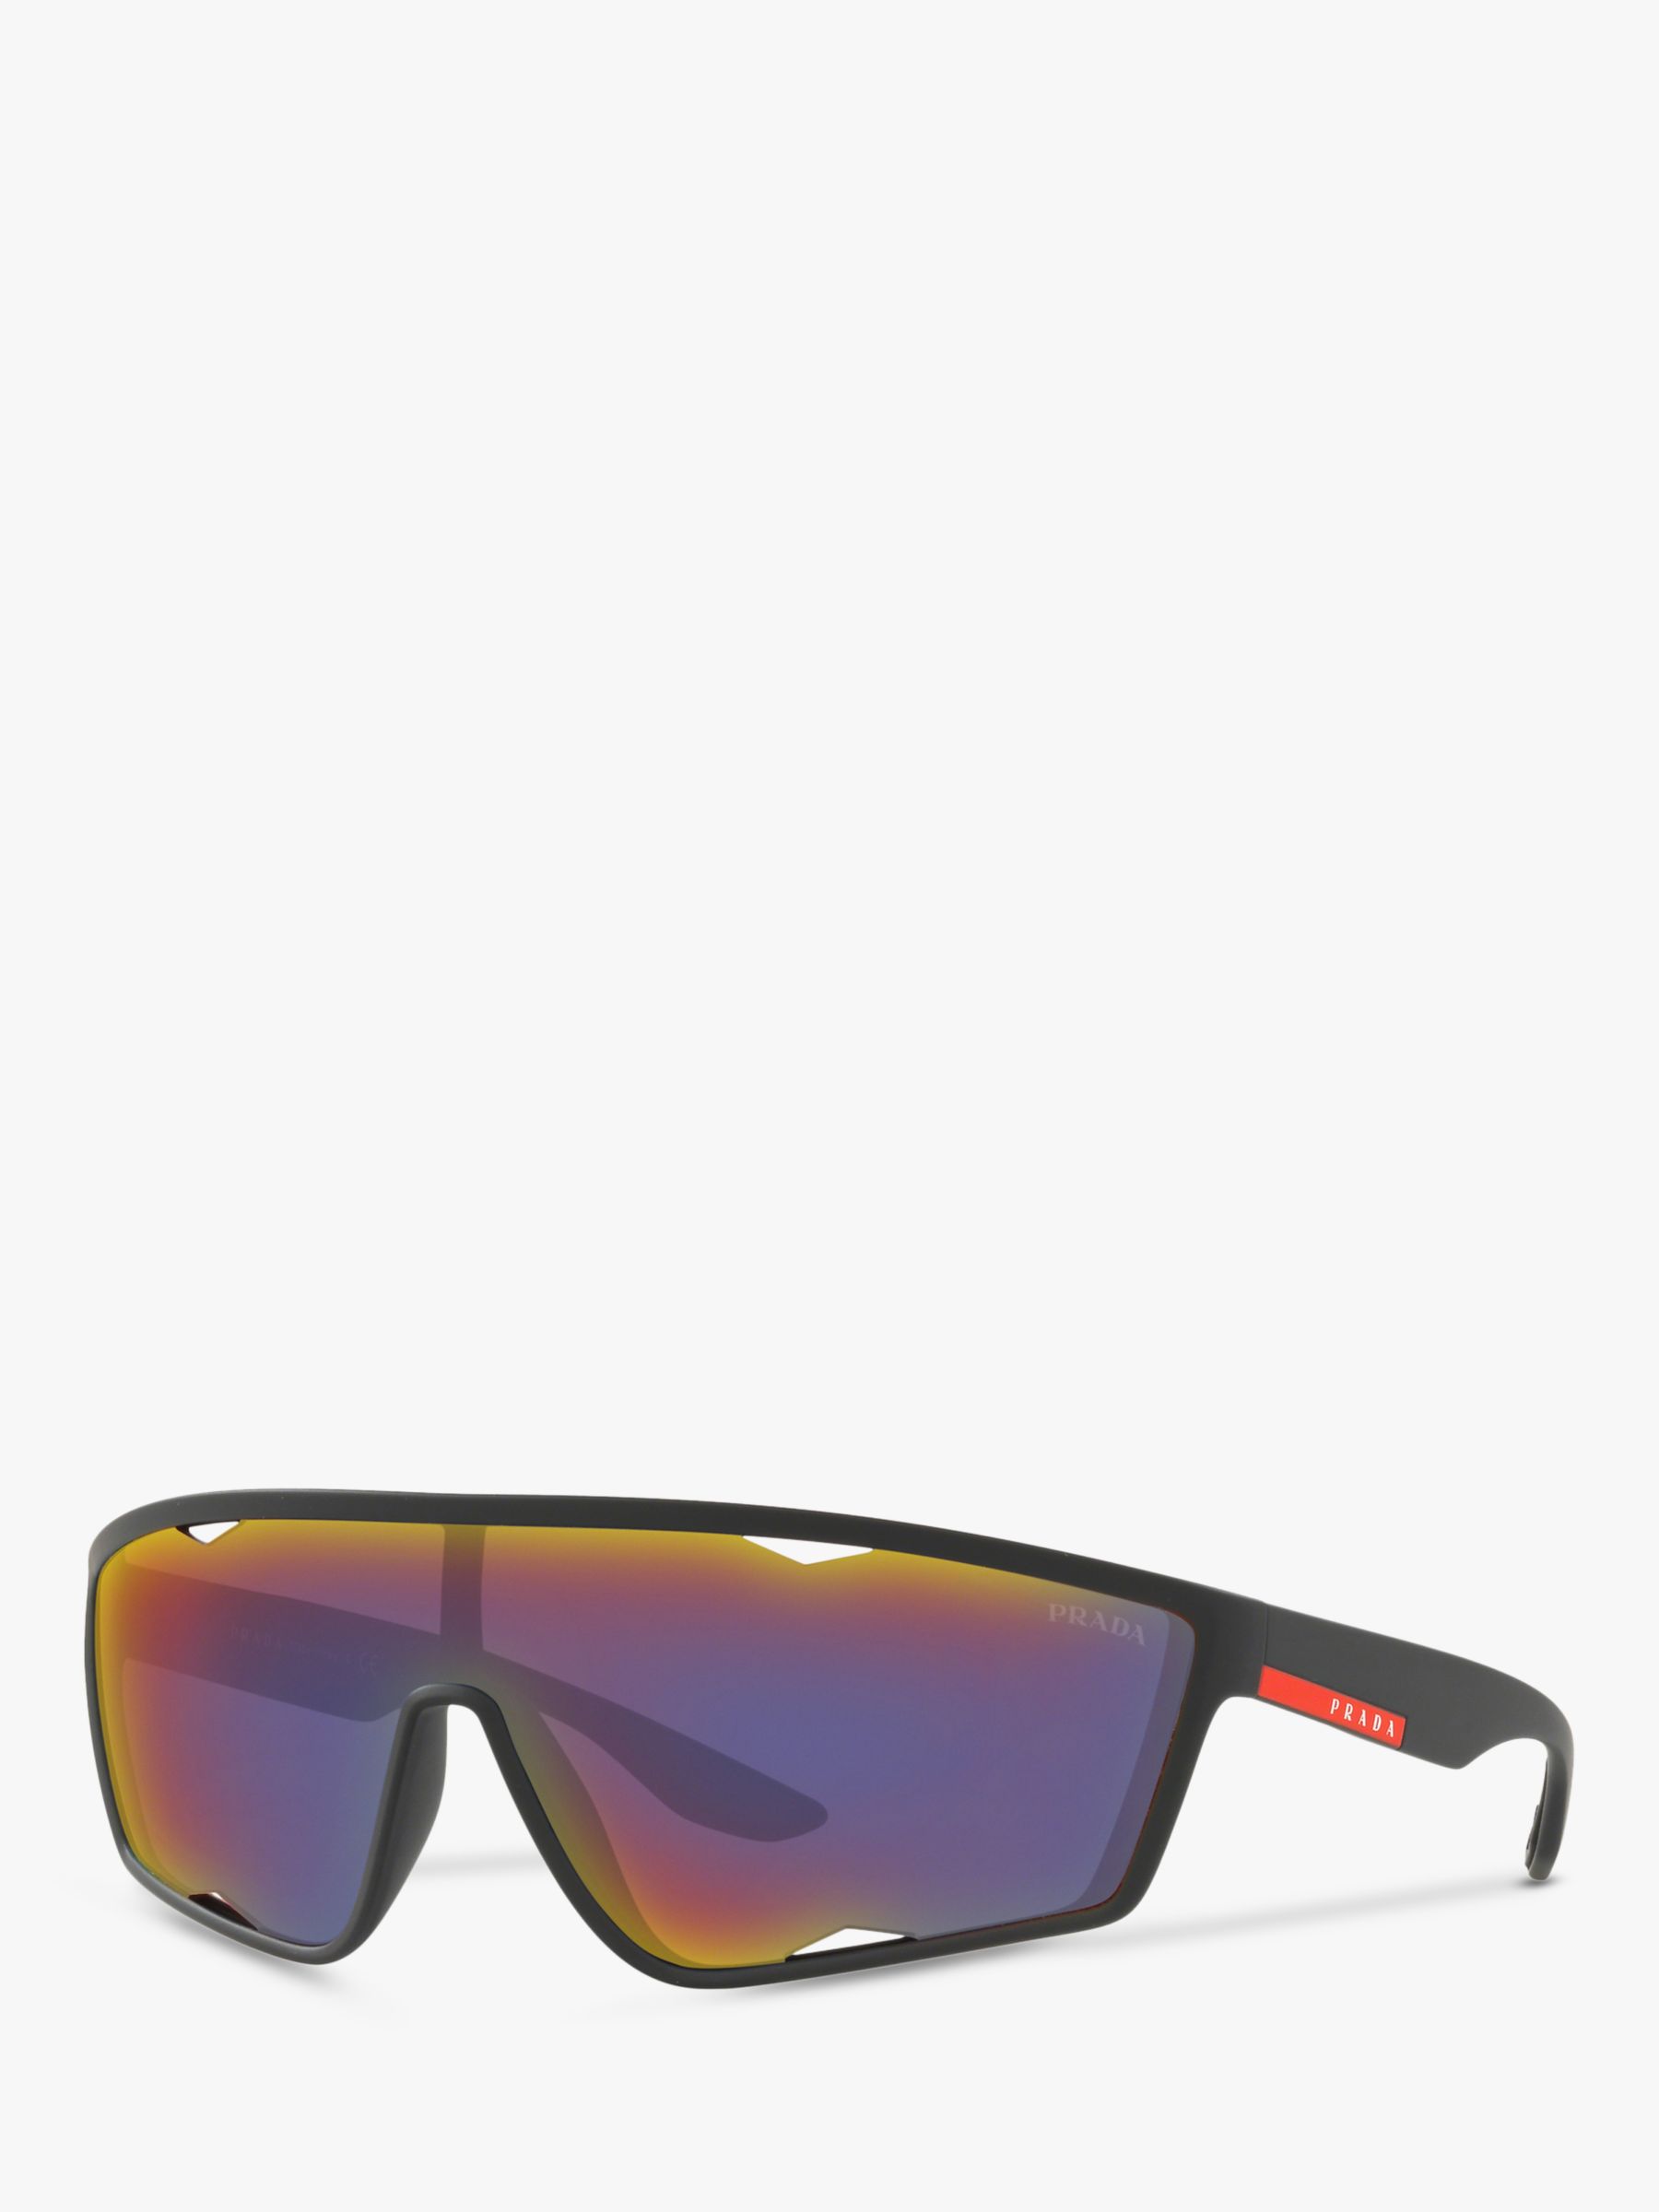 Prada PS 09US Men's Wrap Sunglasses, Black/Grey Mirror at John Lewis ...